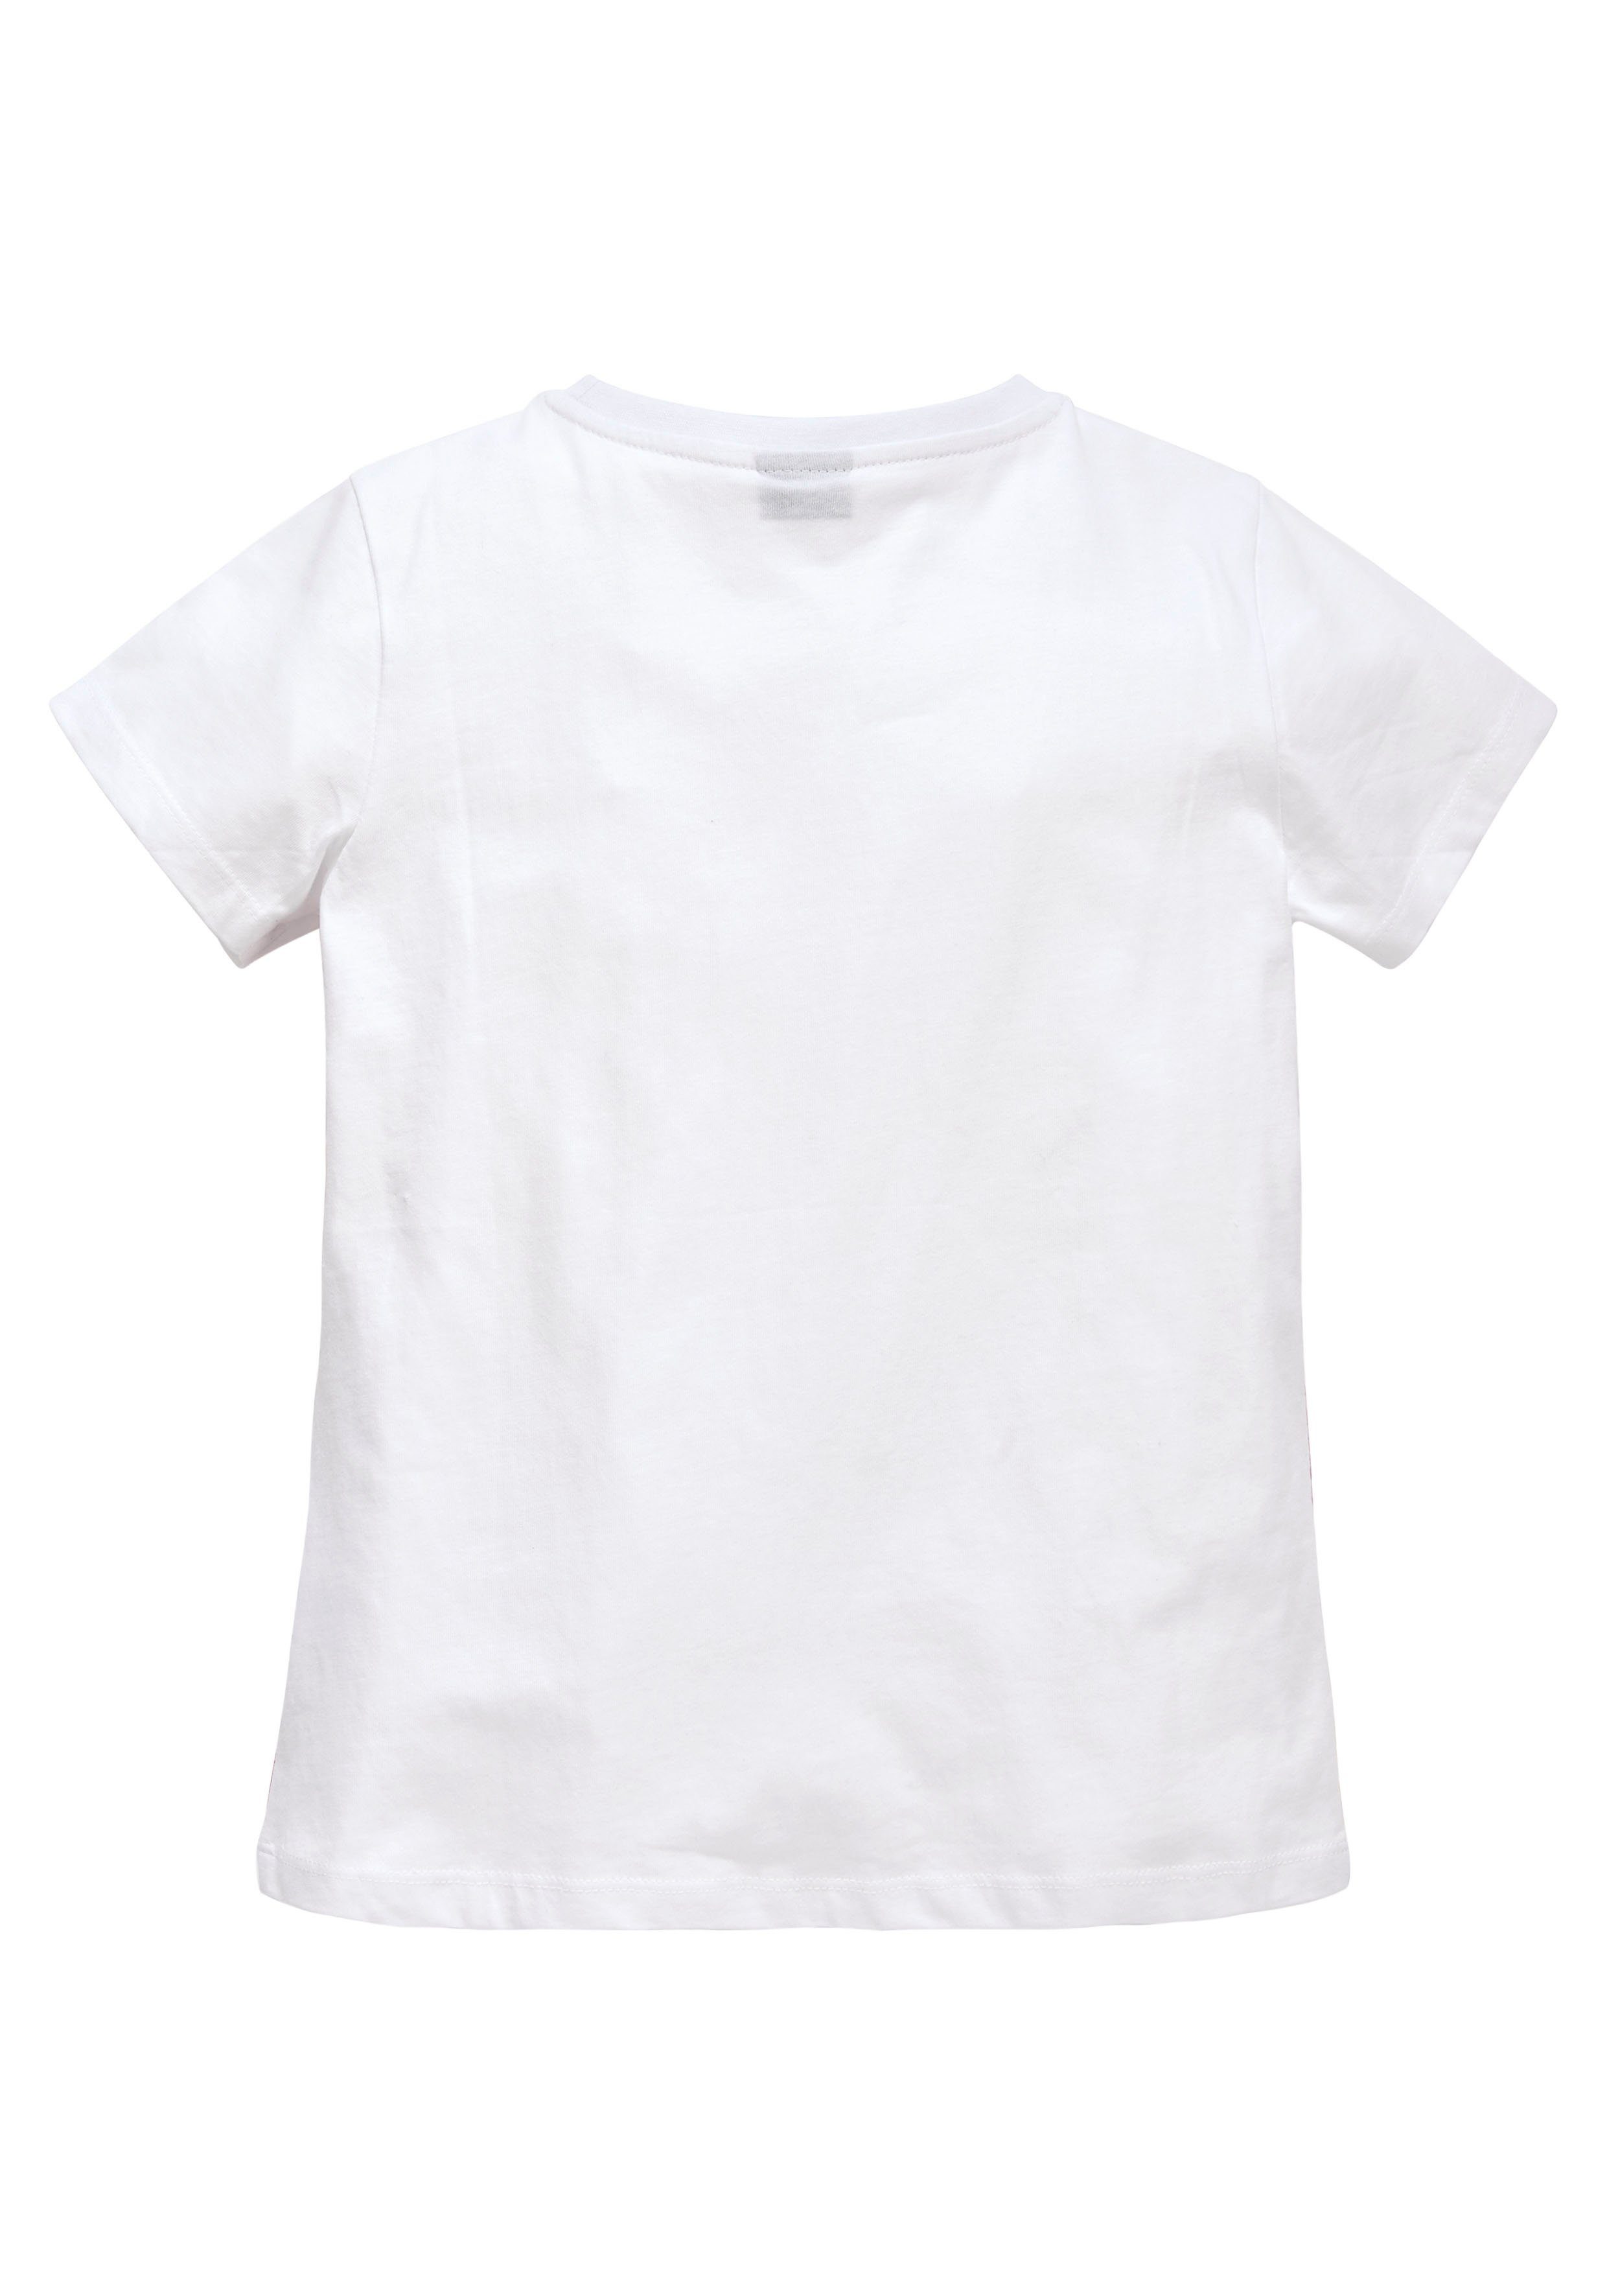 Form leicht in taillierter KIDSWORLD T-Shirt